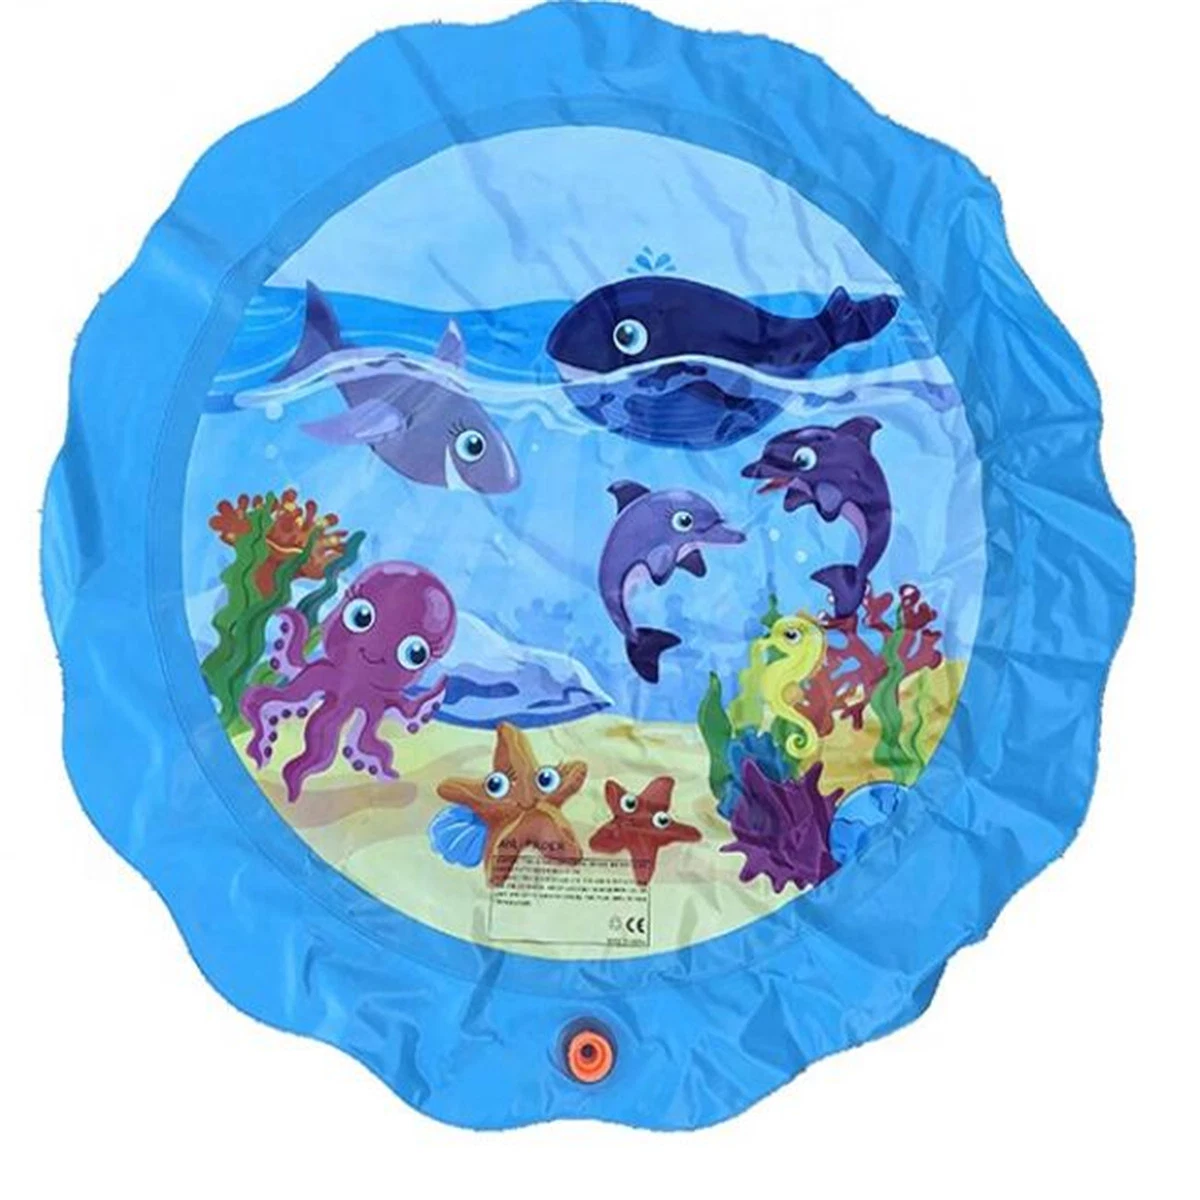 Посыпьте игрушку для Splash Play игрушку для детей Надувная наружная спринклерная площадка